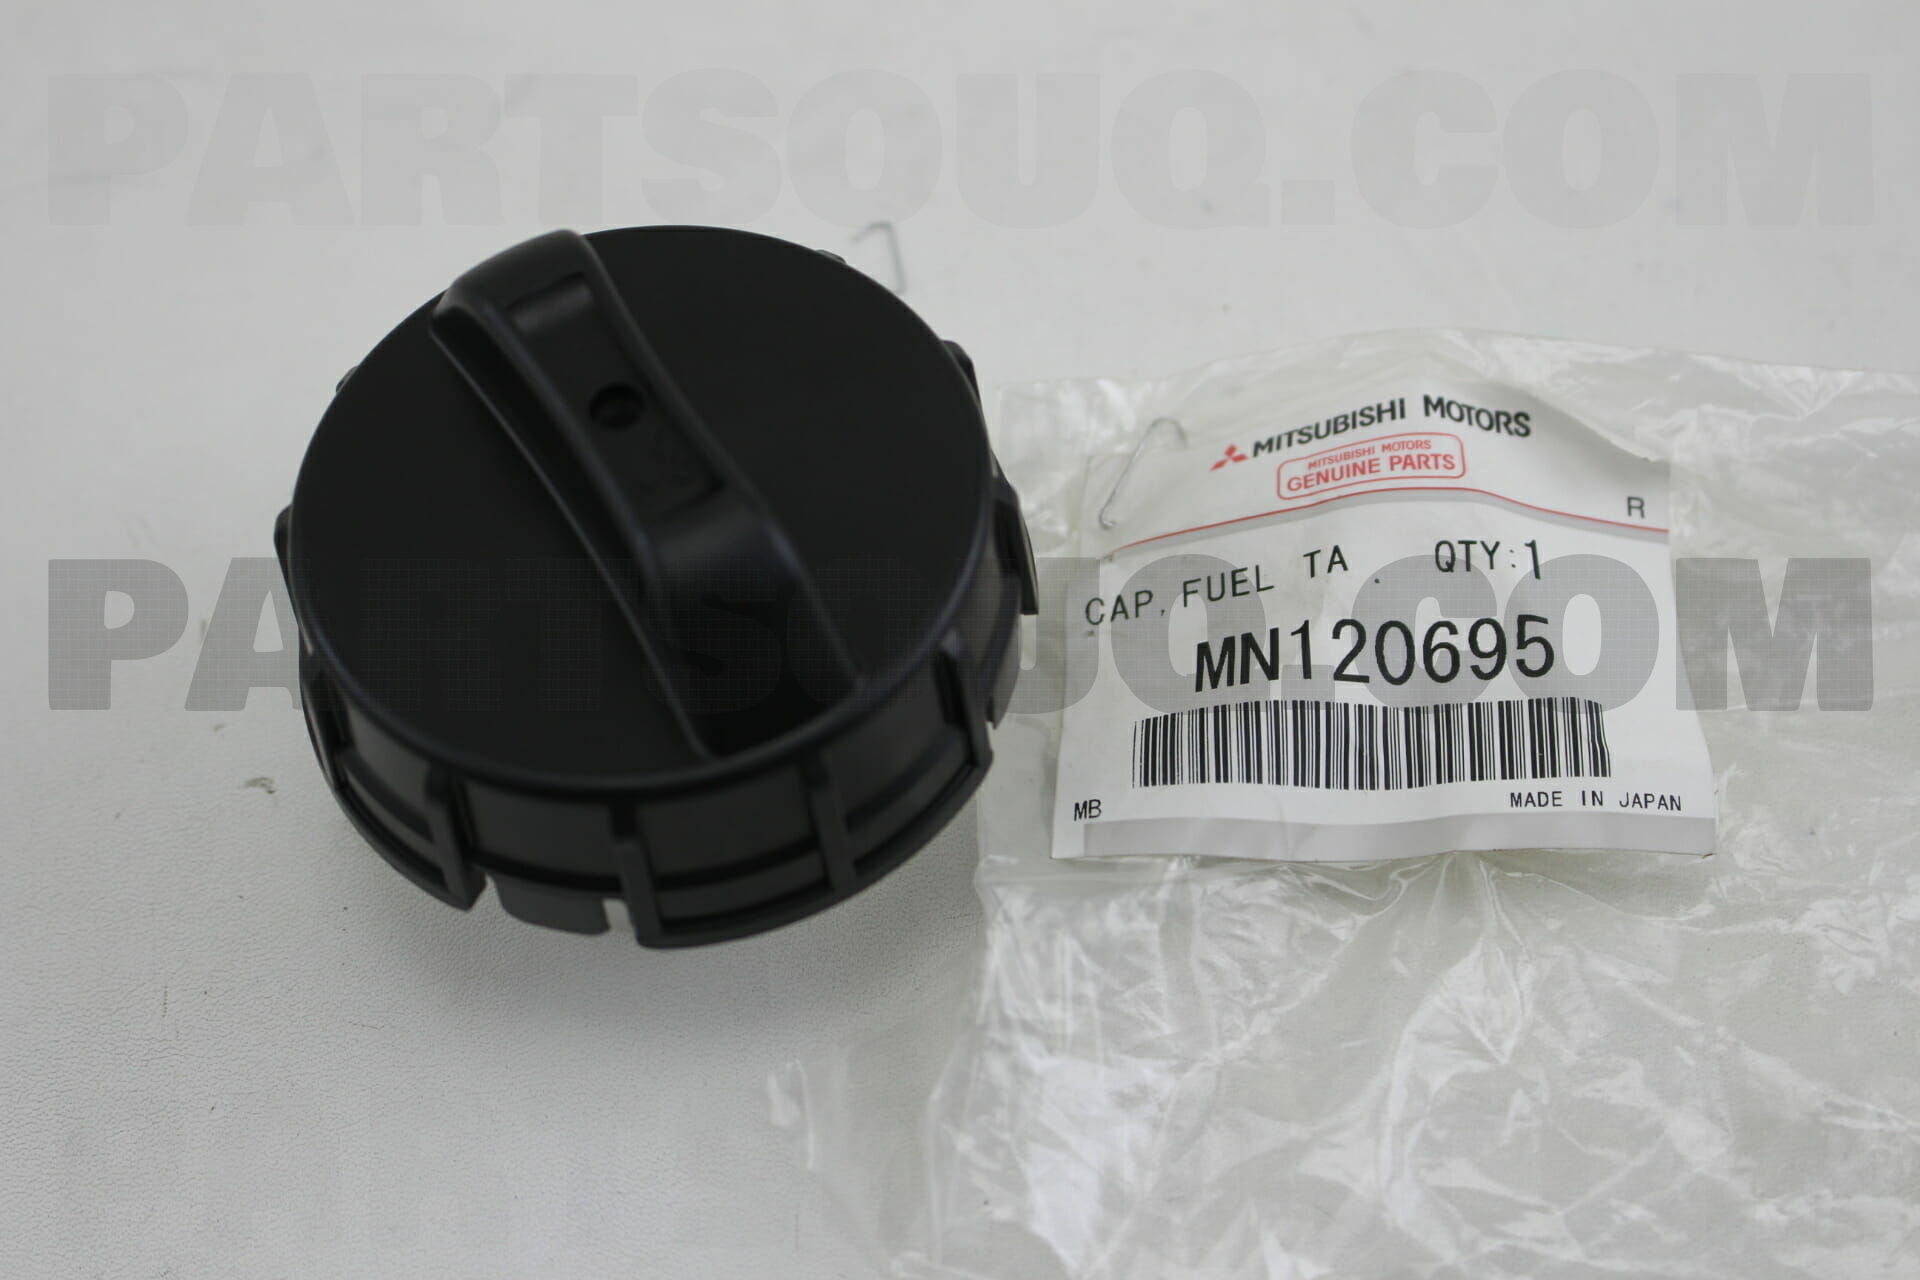 CAP,FUEL TANK MN120695 | Mitsubishi Parts | PartSouq